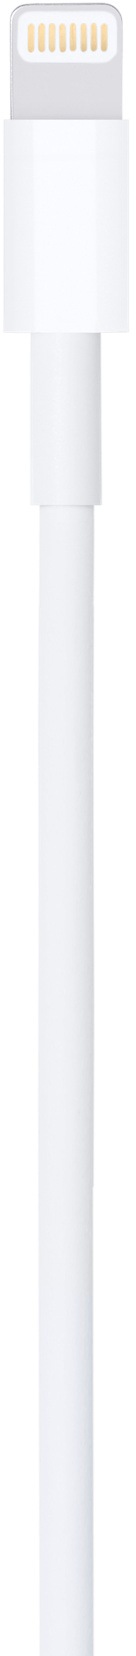 Apple Smartphone-Kabel »Lightning to USB Cable (2 m)«, Lightning, USB, 200 cm